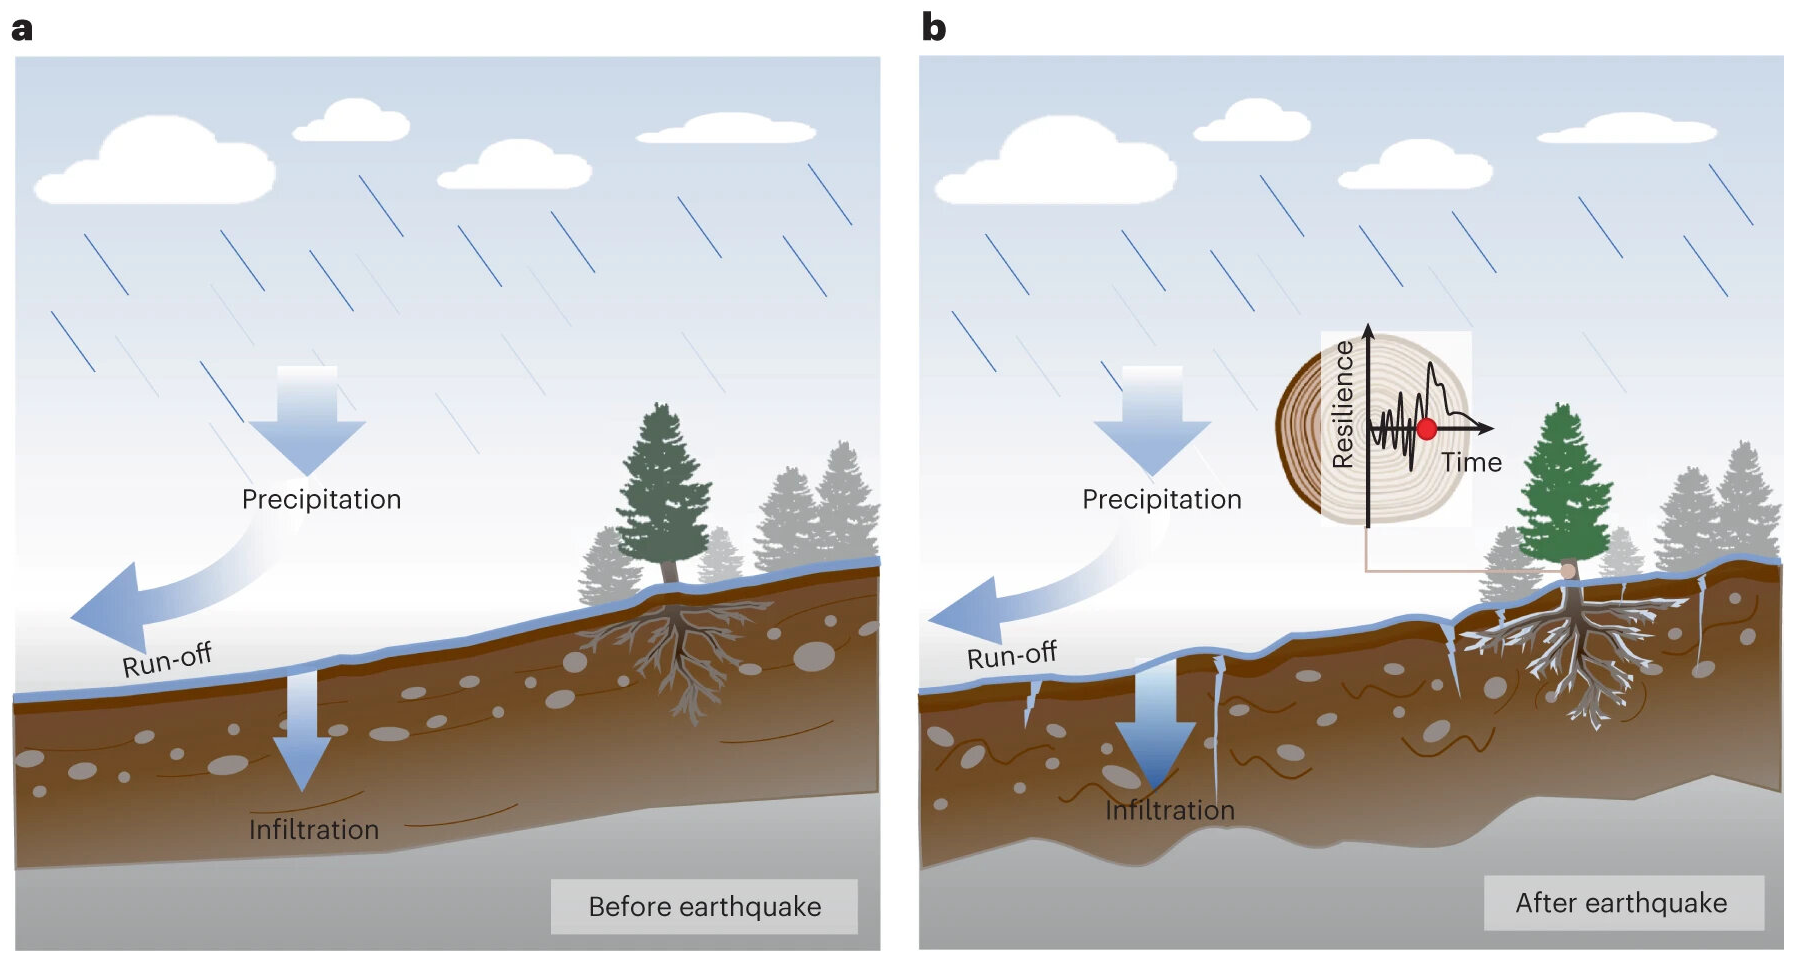 sơ đồ về cách các sự kiện địa chấn ảnh hưởng đến khả năng phục hồi của rừng. Ảnh: Gao et al. 2024.